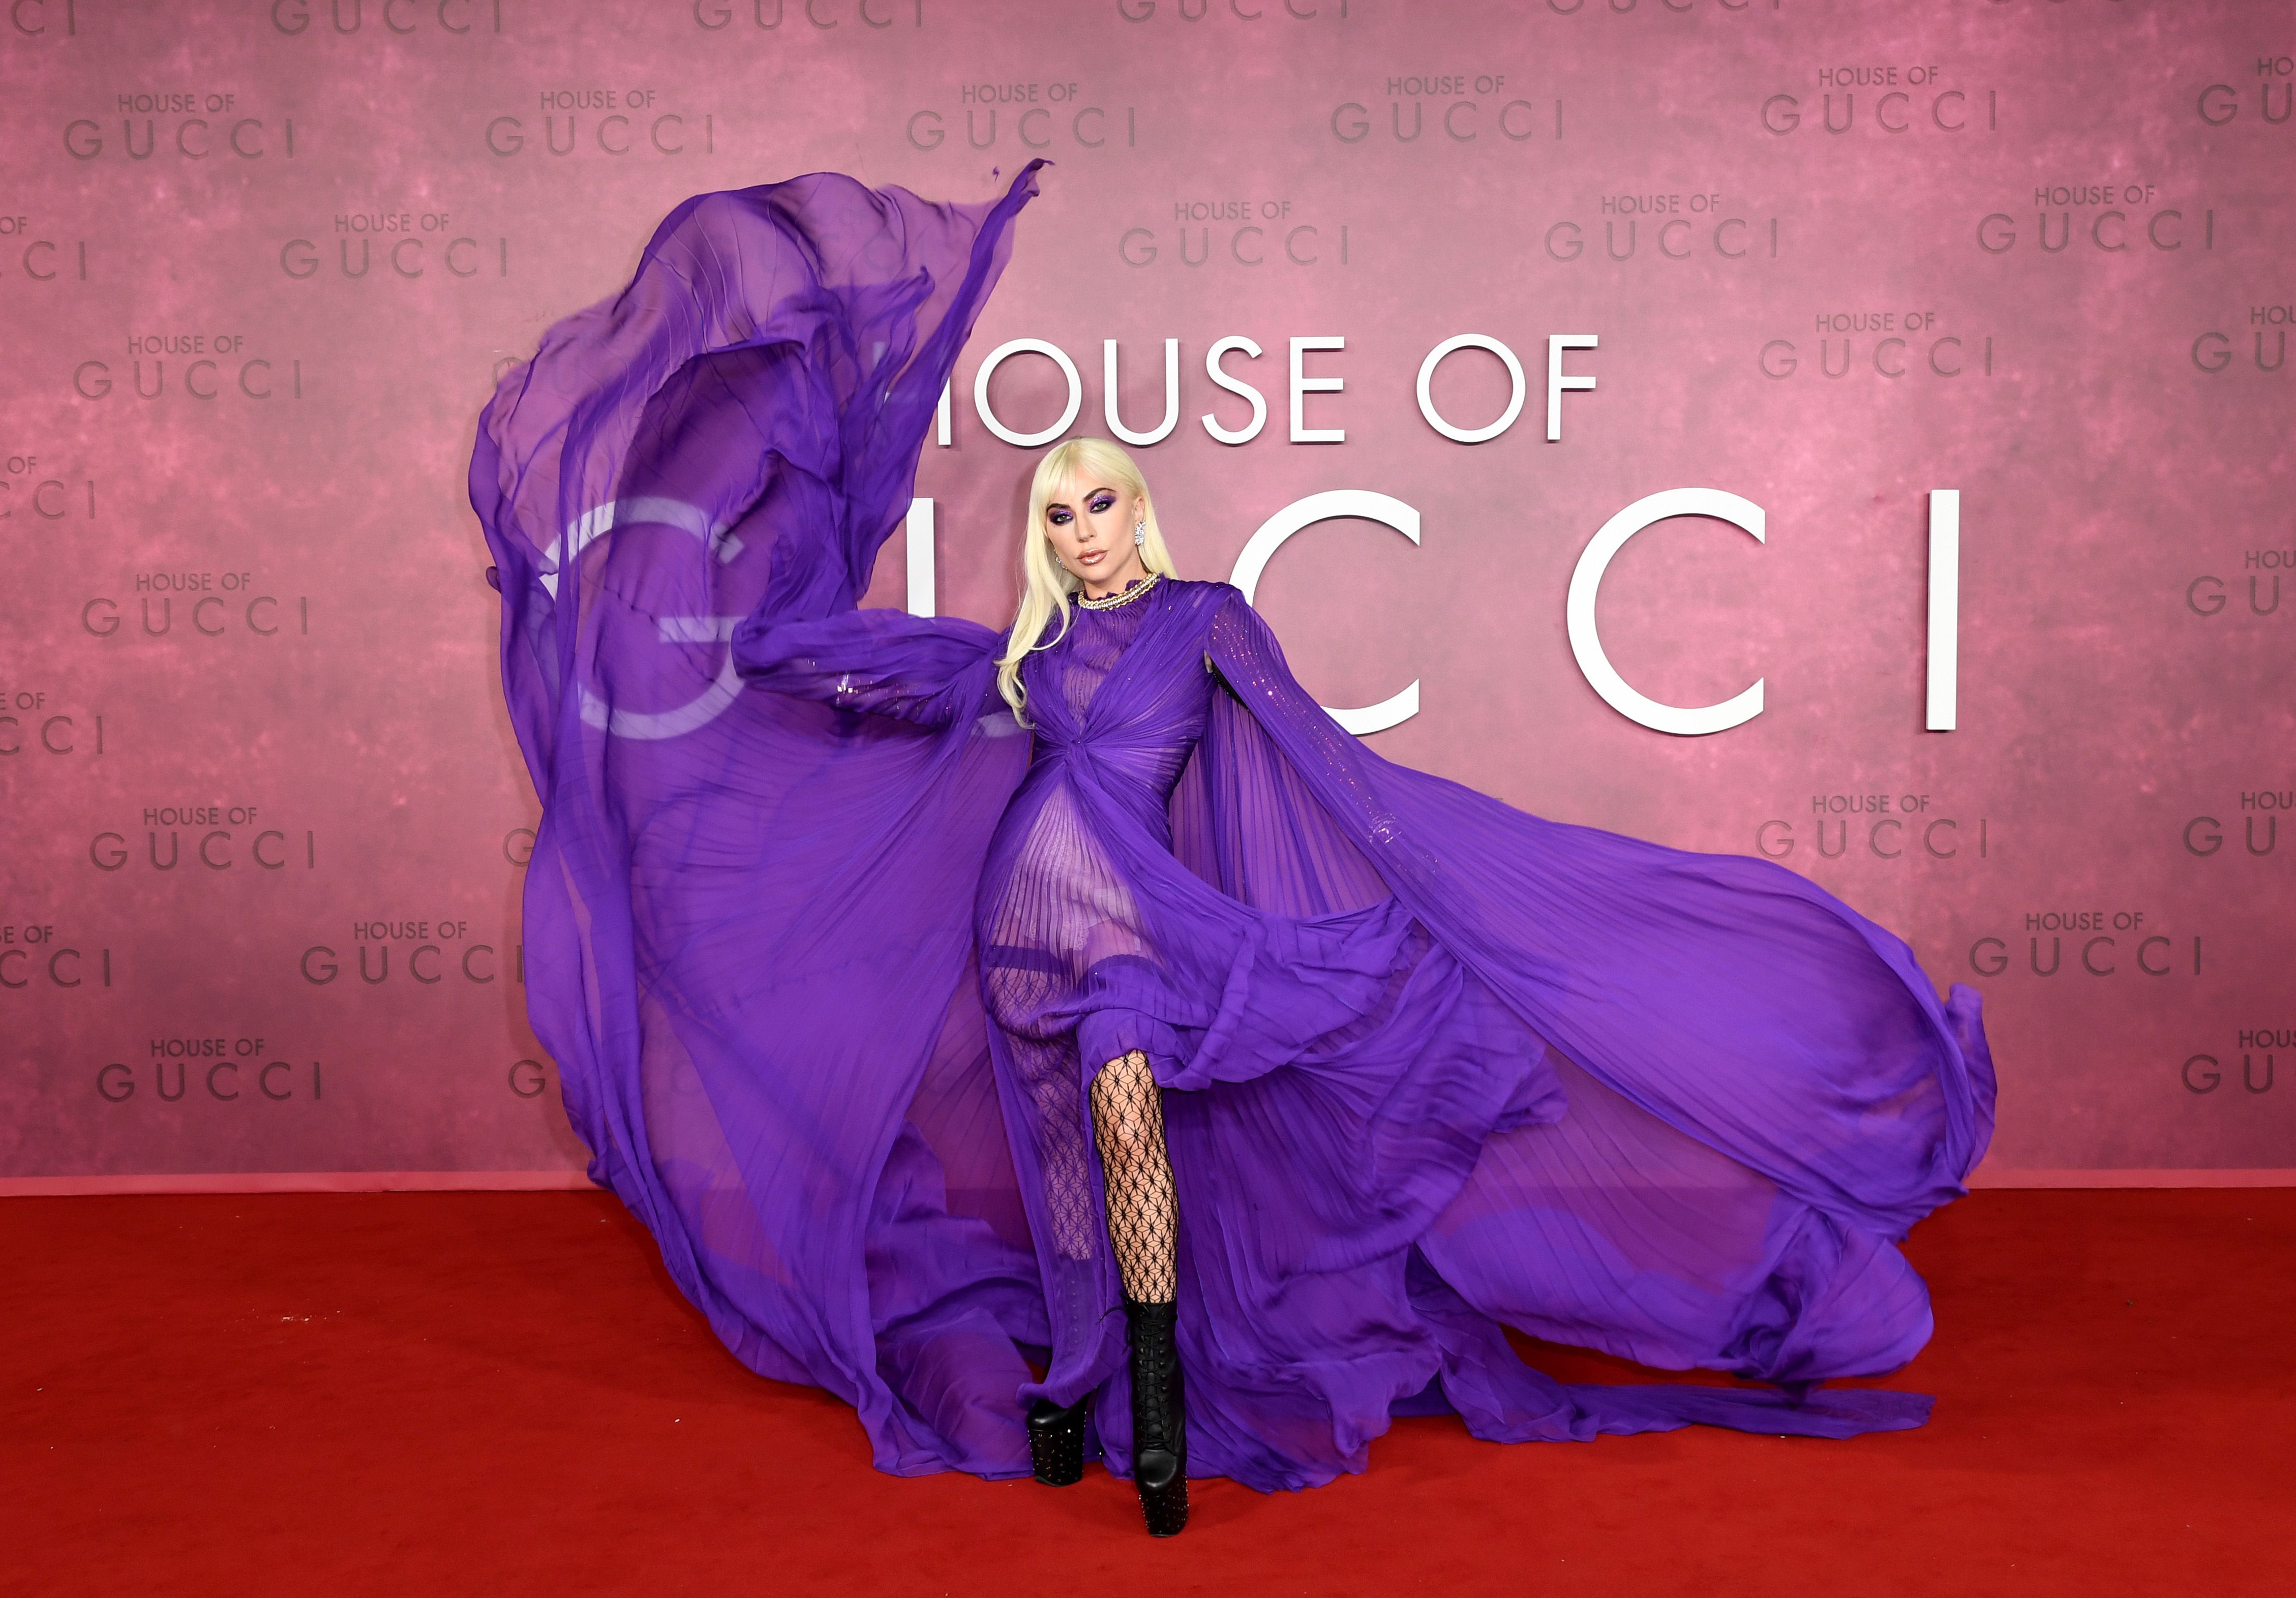 Lady Gaga's Violet Gown at U.K. of Premiere